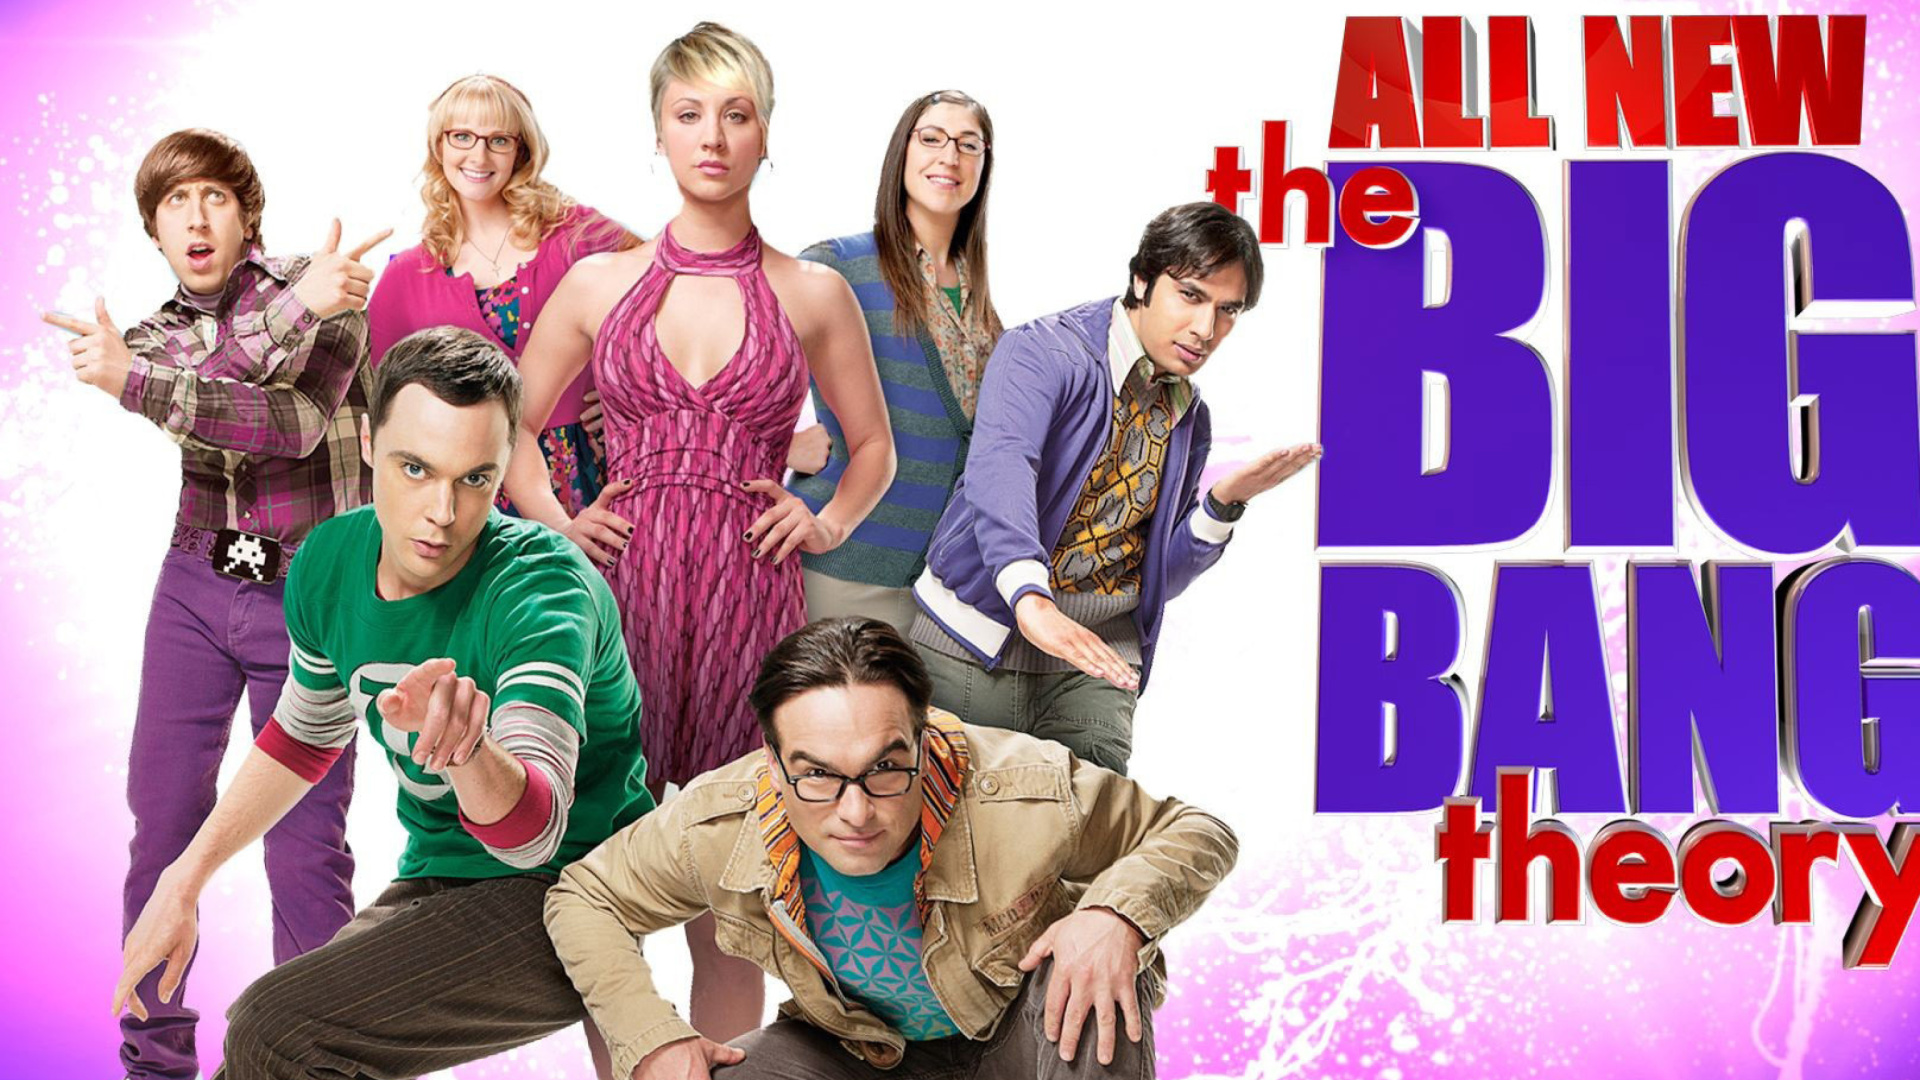 The Big Bang Theory - Fondos de pantalla gratis para escritorio 1920x1080  Full HD